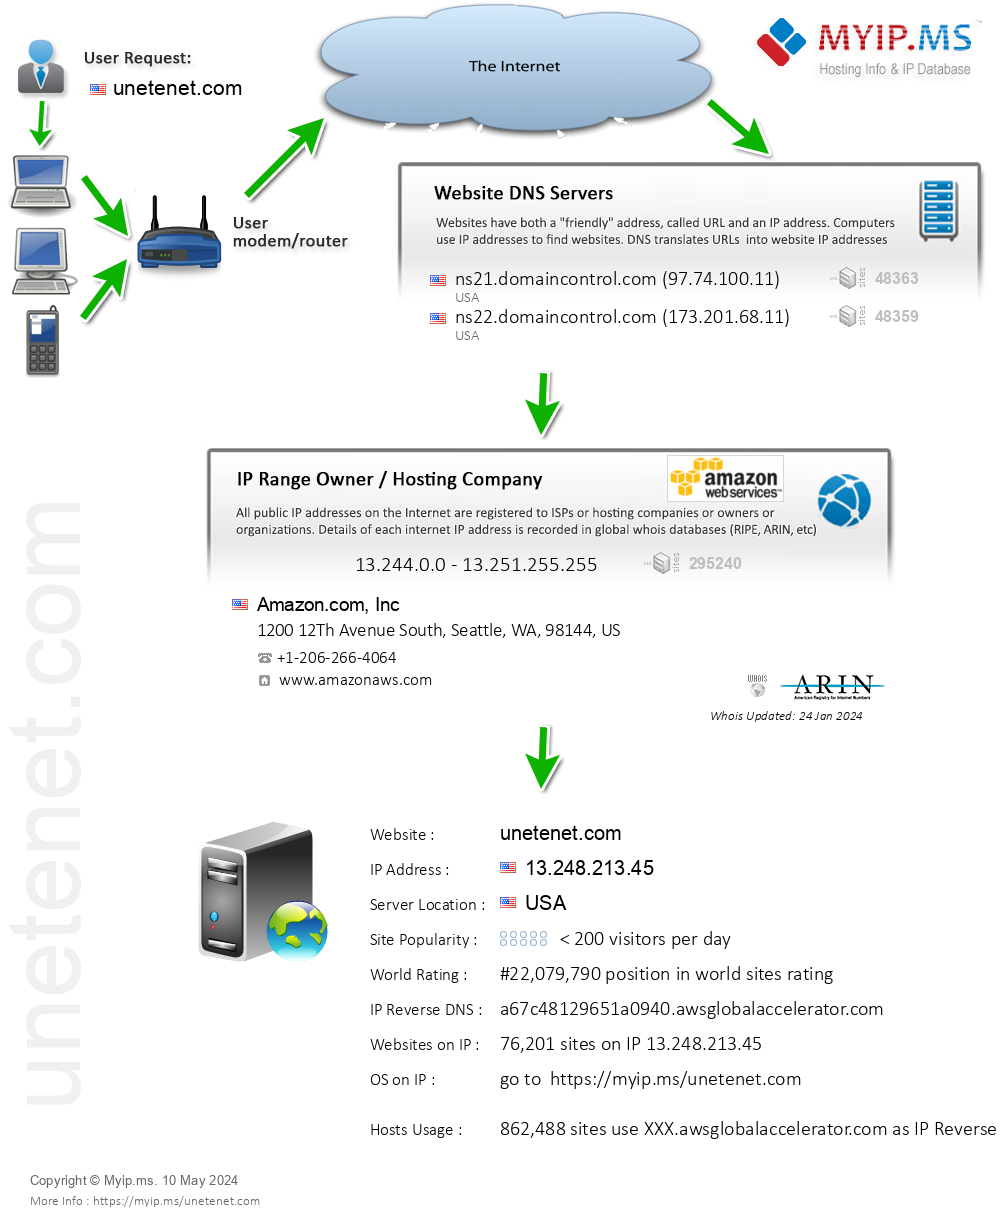 Unetenet.com - Website Hosting Visual IP Diagram